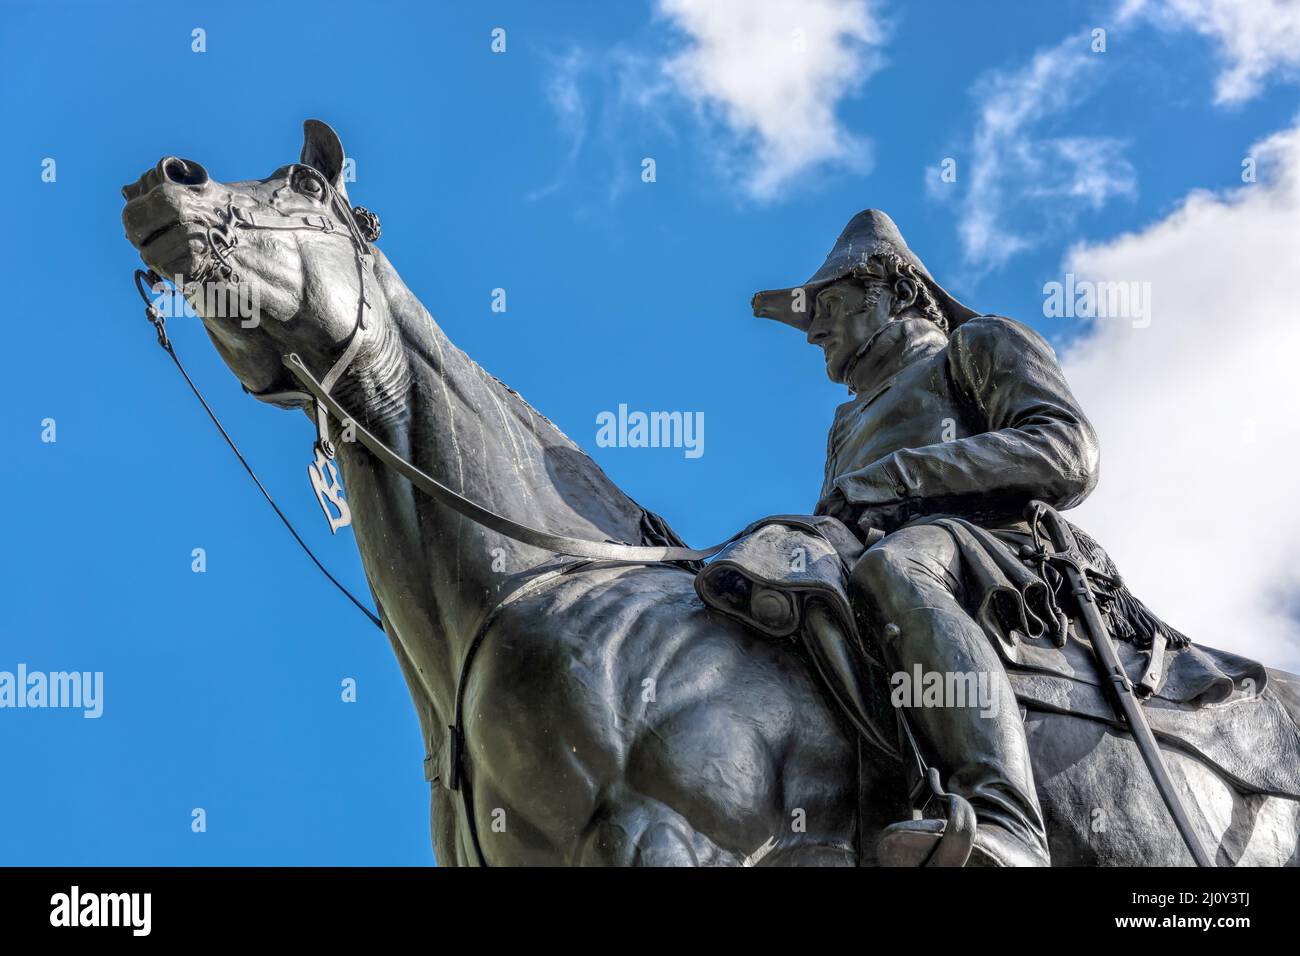 LONDON - NOVEMBER 3 : Duke of Wellington Monument in London on November 3, 2013 Stock Photo